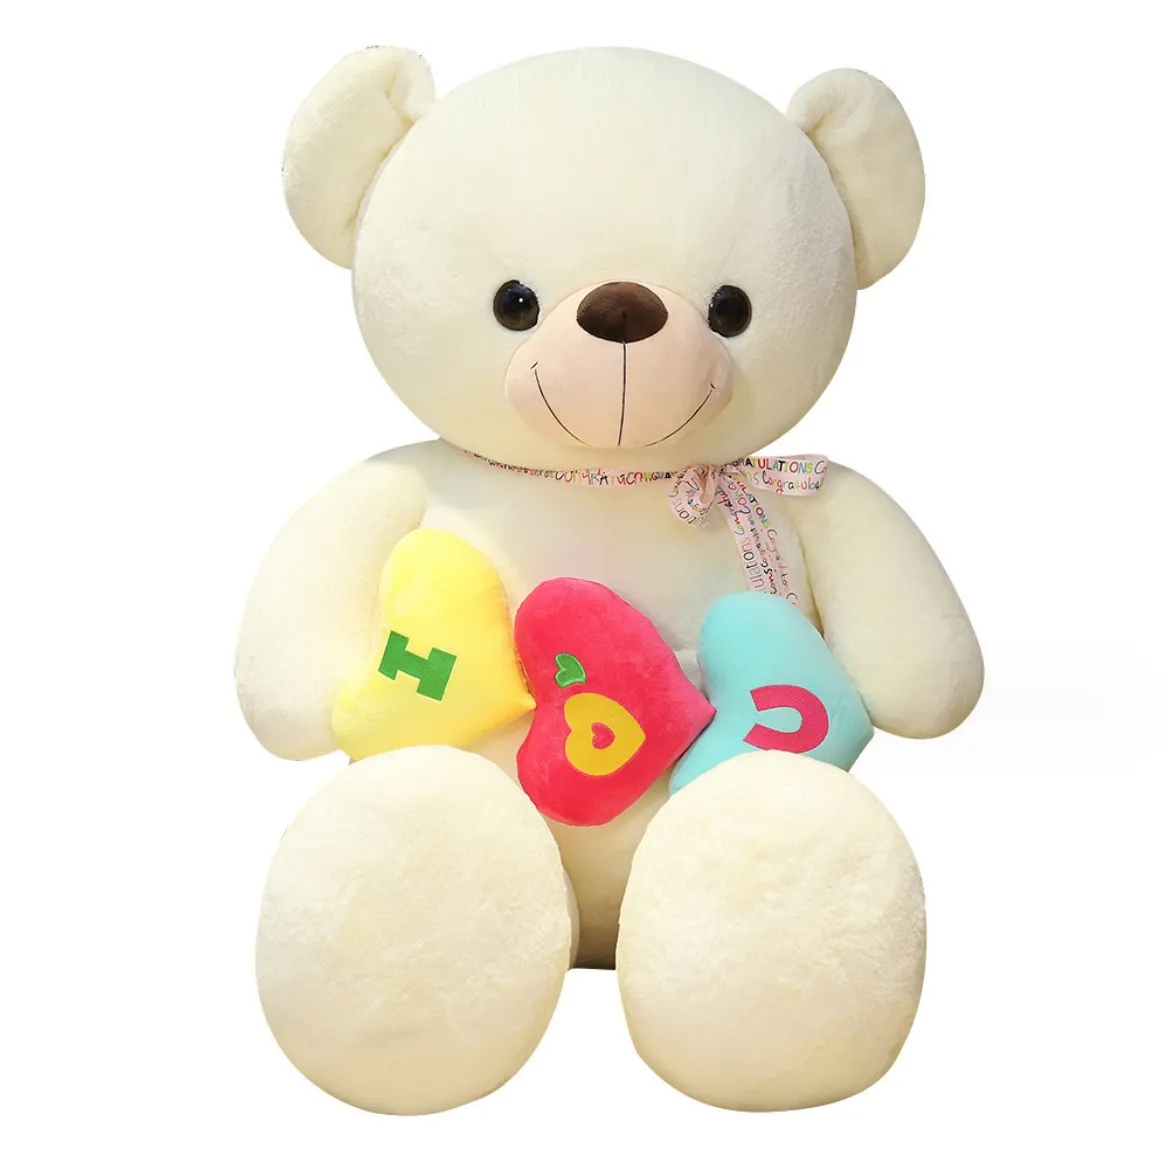 Tình Yêu huggable Gấu bông sang trọng Đồ chơi đám cưới búp bê cho bạn gái của bạn một con búp bê gấu lớn huggable vào ngày valentine, tình yêu